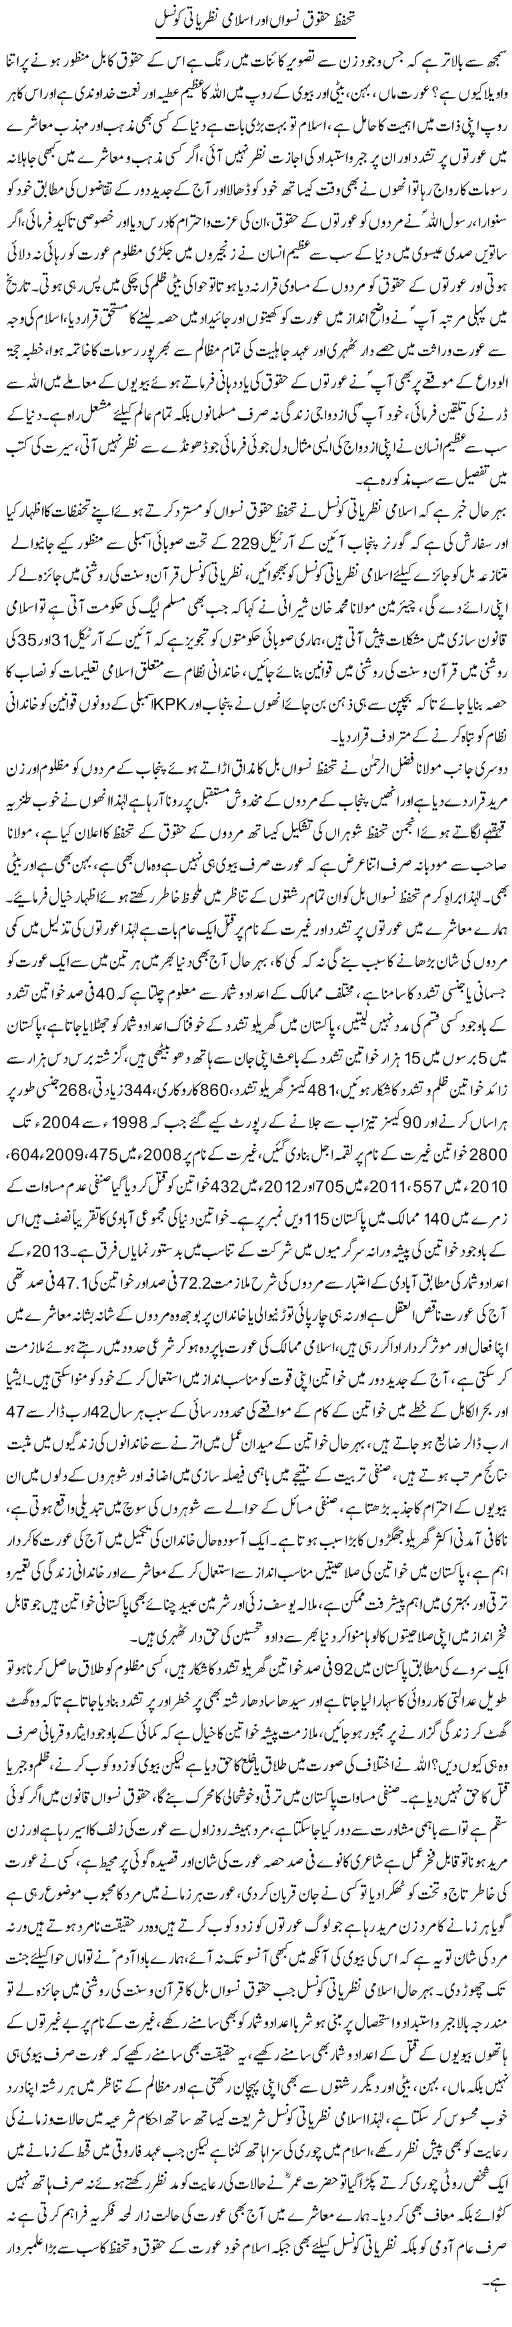 Tahaffuz Haqooq Niswan Aor Islami Nazriati Council | Dr. Muhammad Tayyab Khan Singhanvi | Daily Urdu Columns